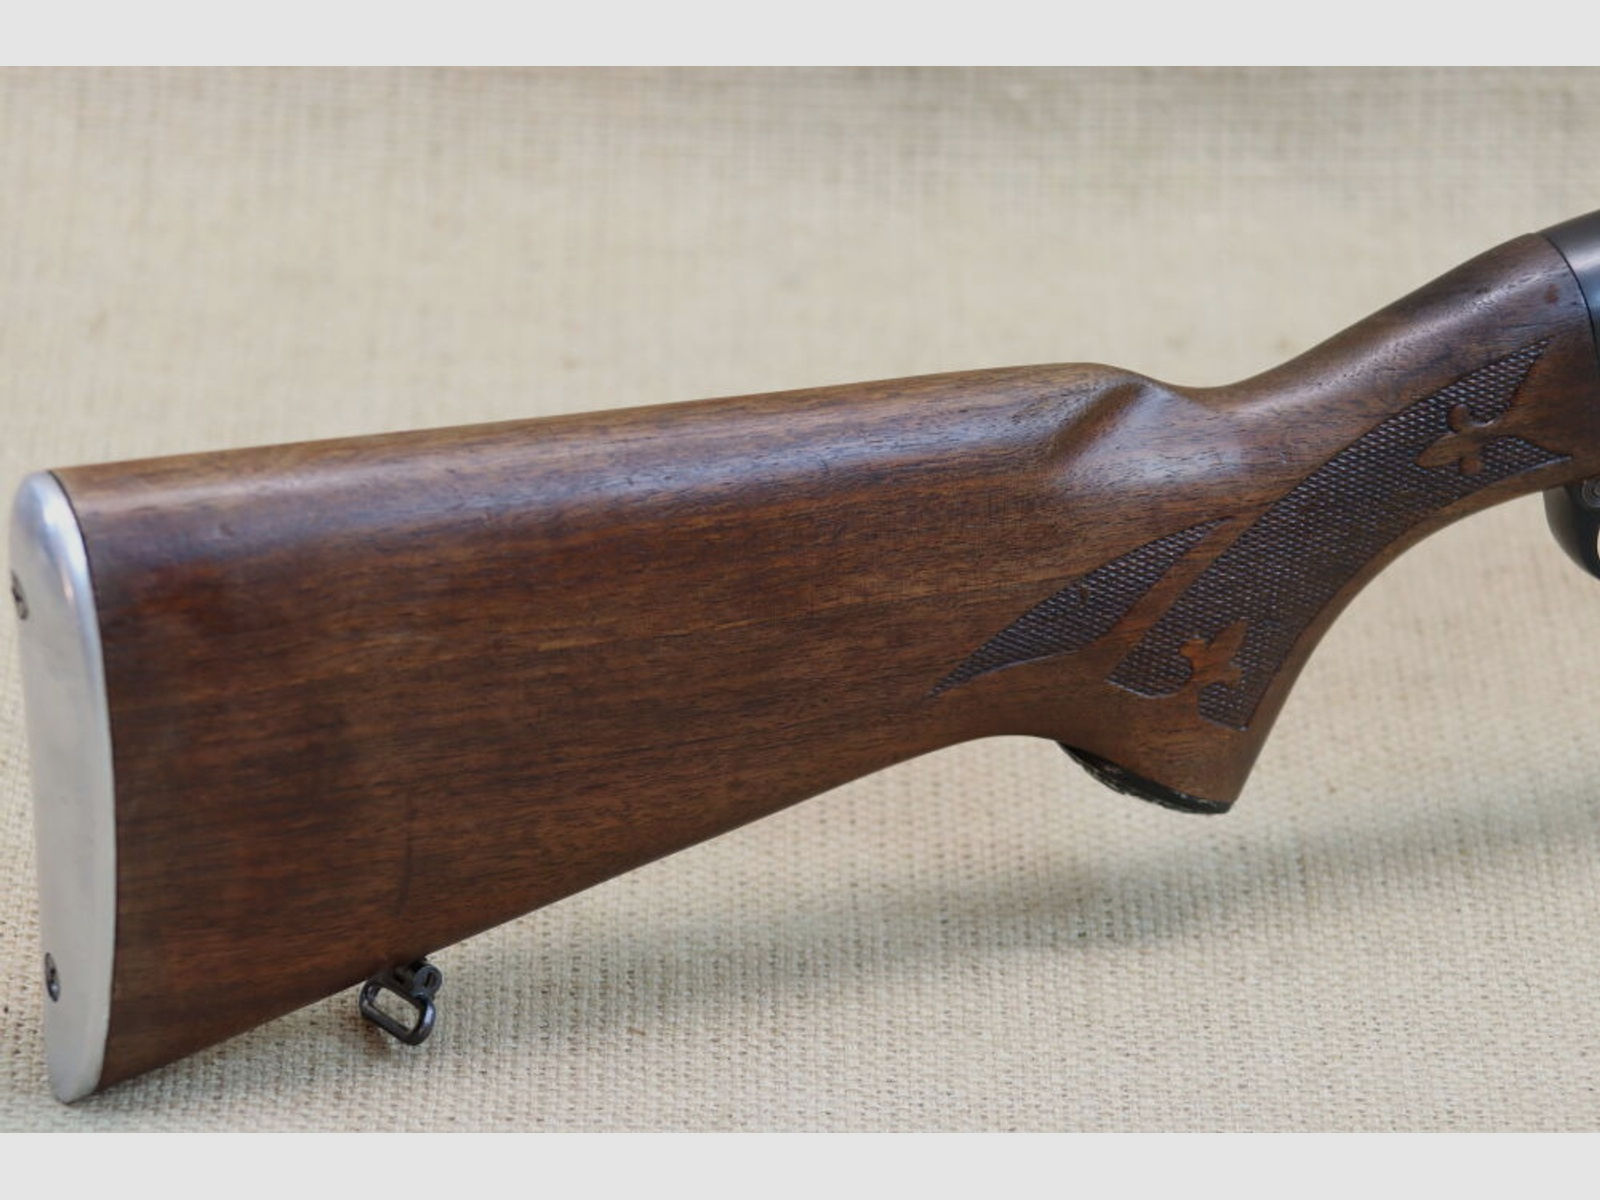 Halbautomatische Büchse Remington, Mod. Woodmaster 742, Kal. .30-06 Spring.